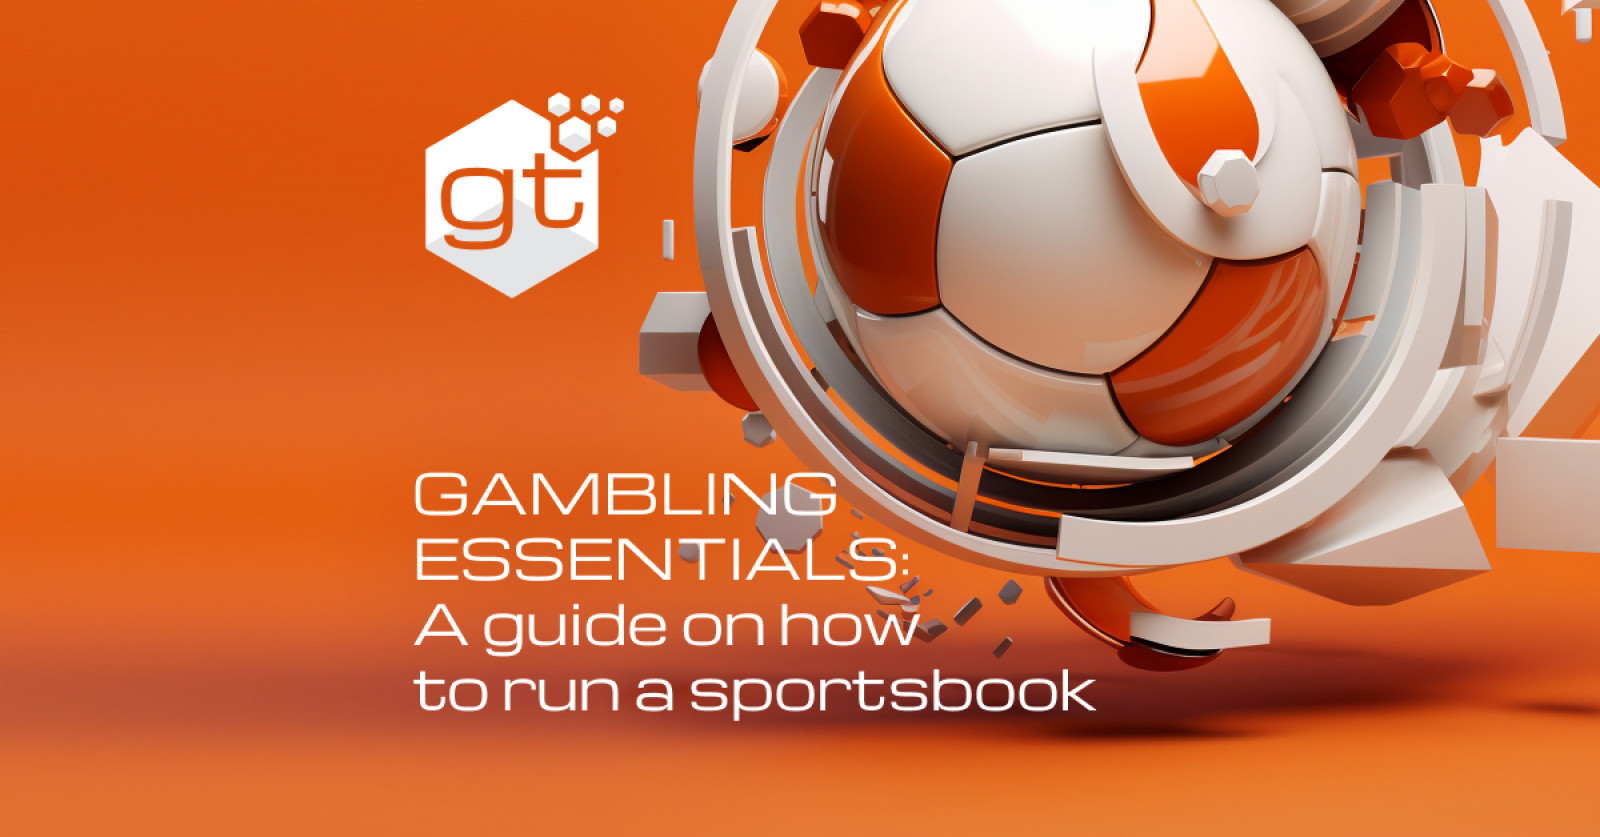 Gambling essentials: A short guide on running a sportsbook